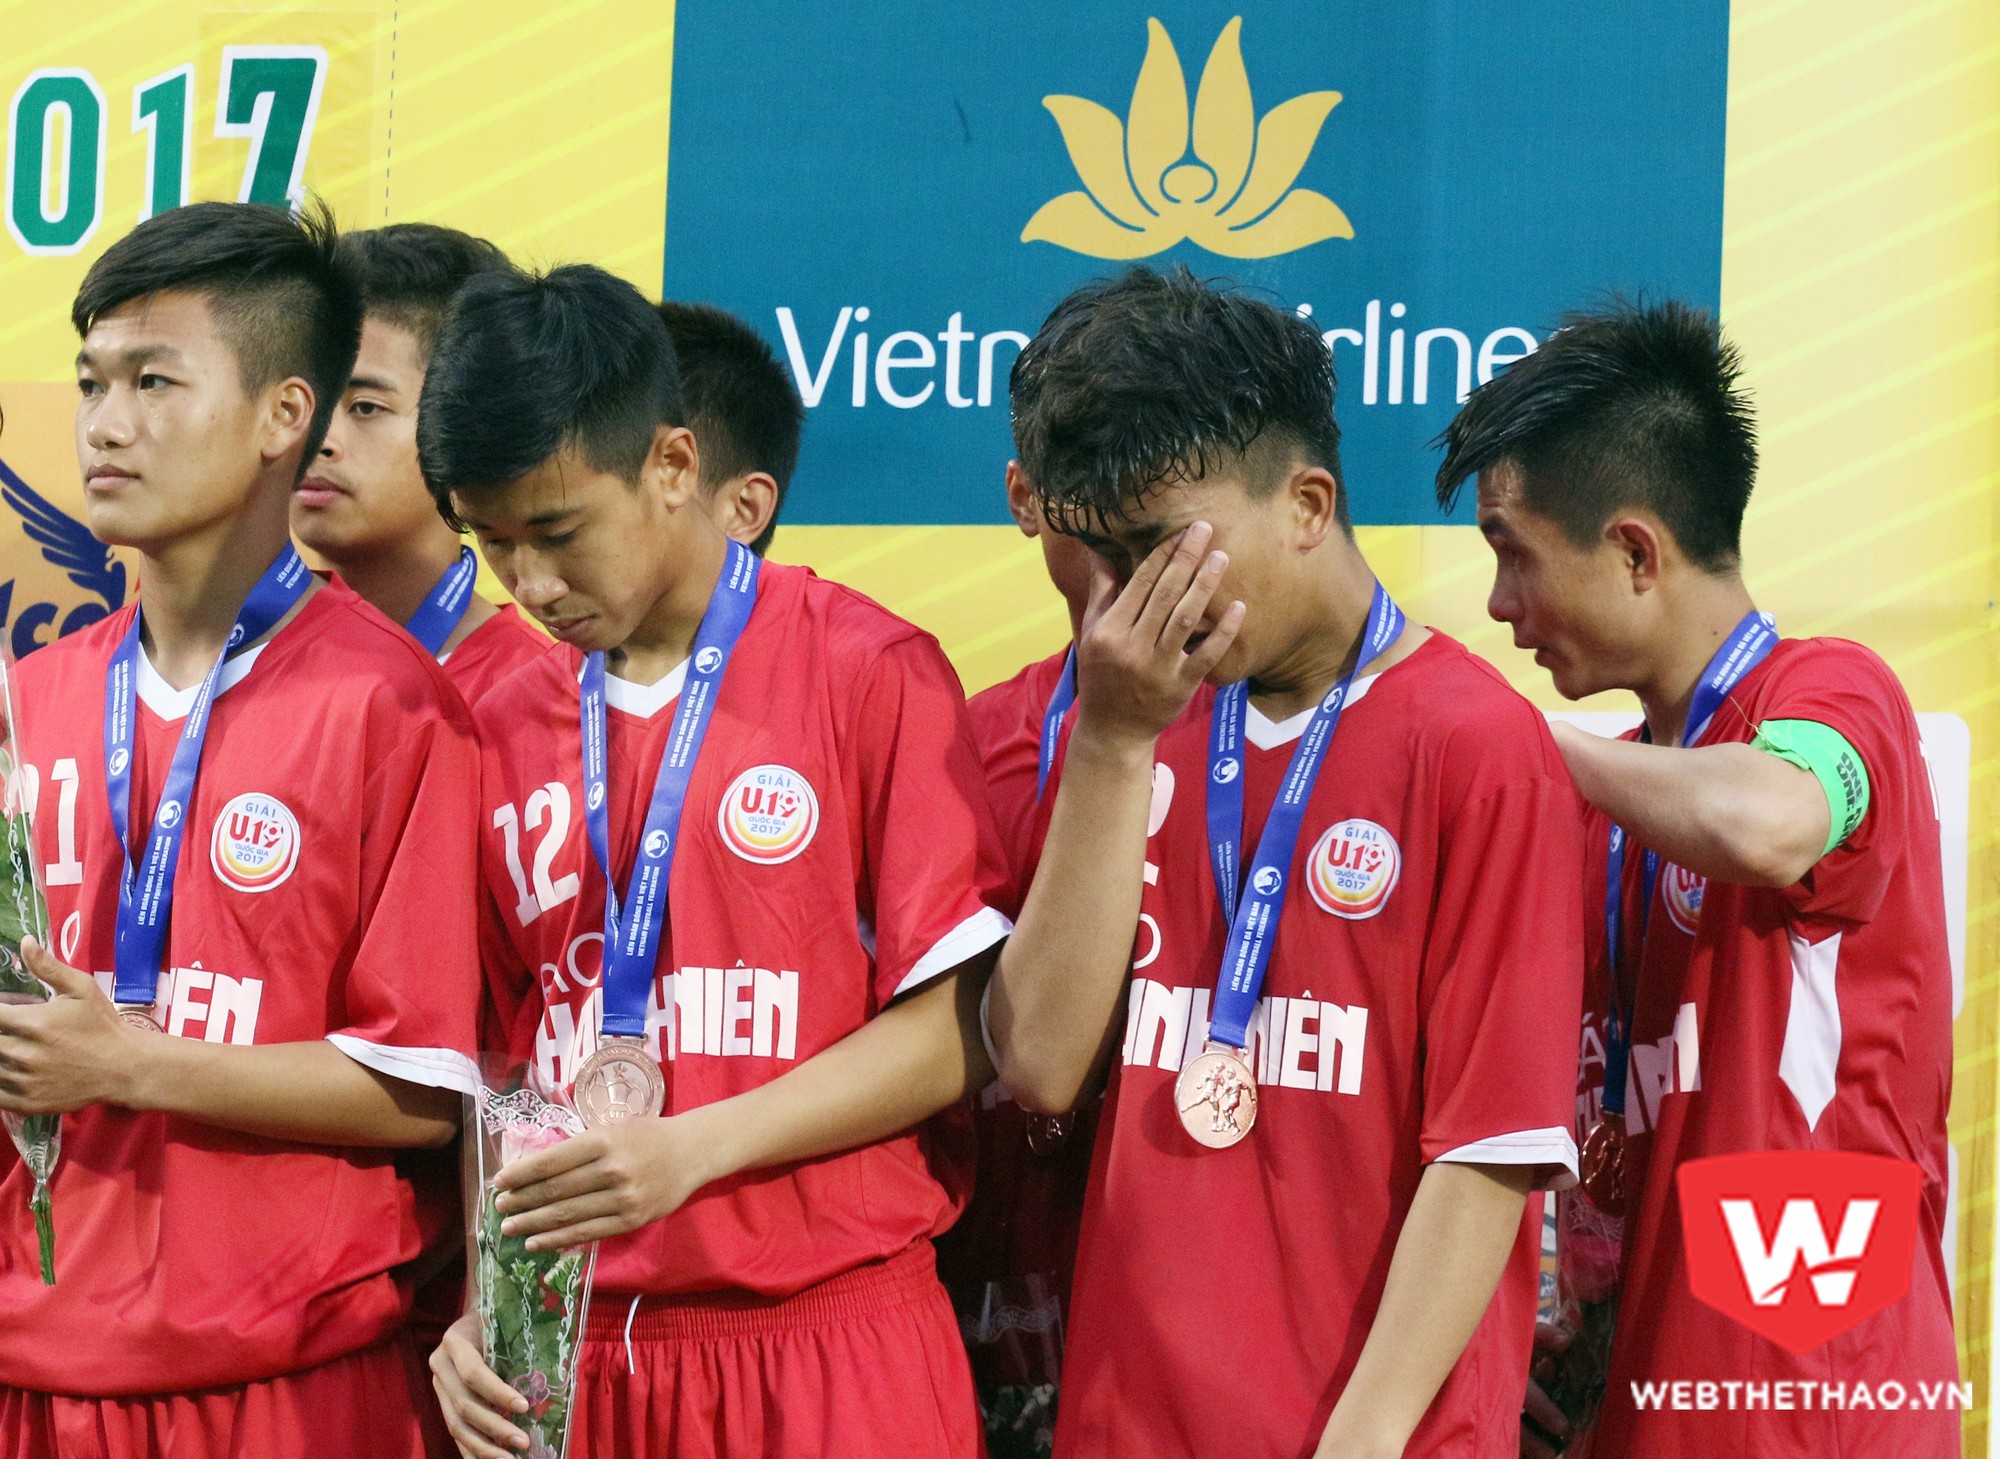 Các cầu thủ Viettel bật khóc trên bục nhận hạng Ba. Ảnh: Văn Nhân